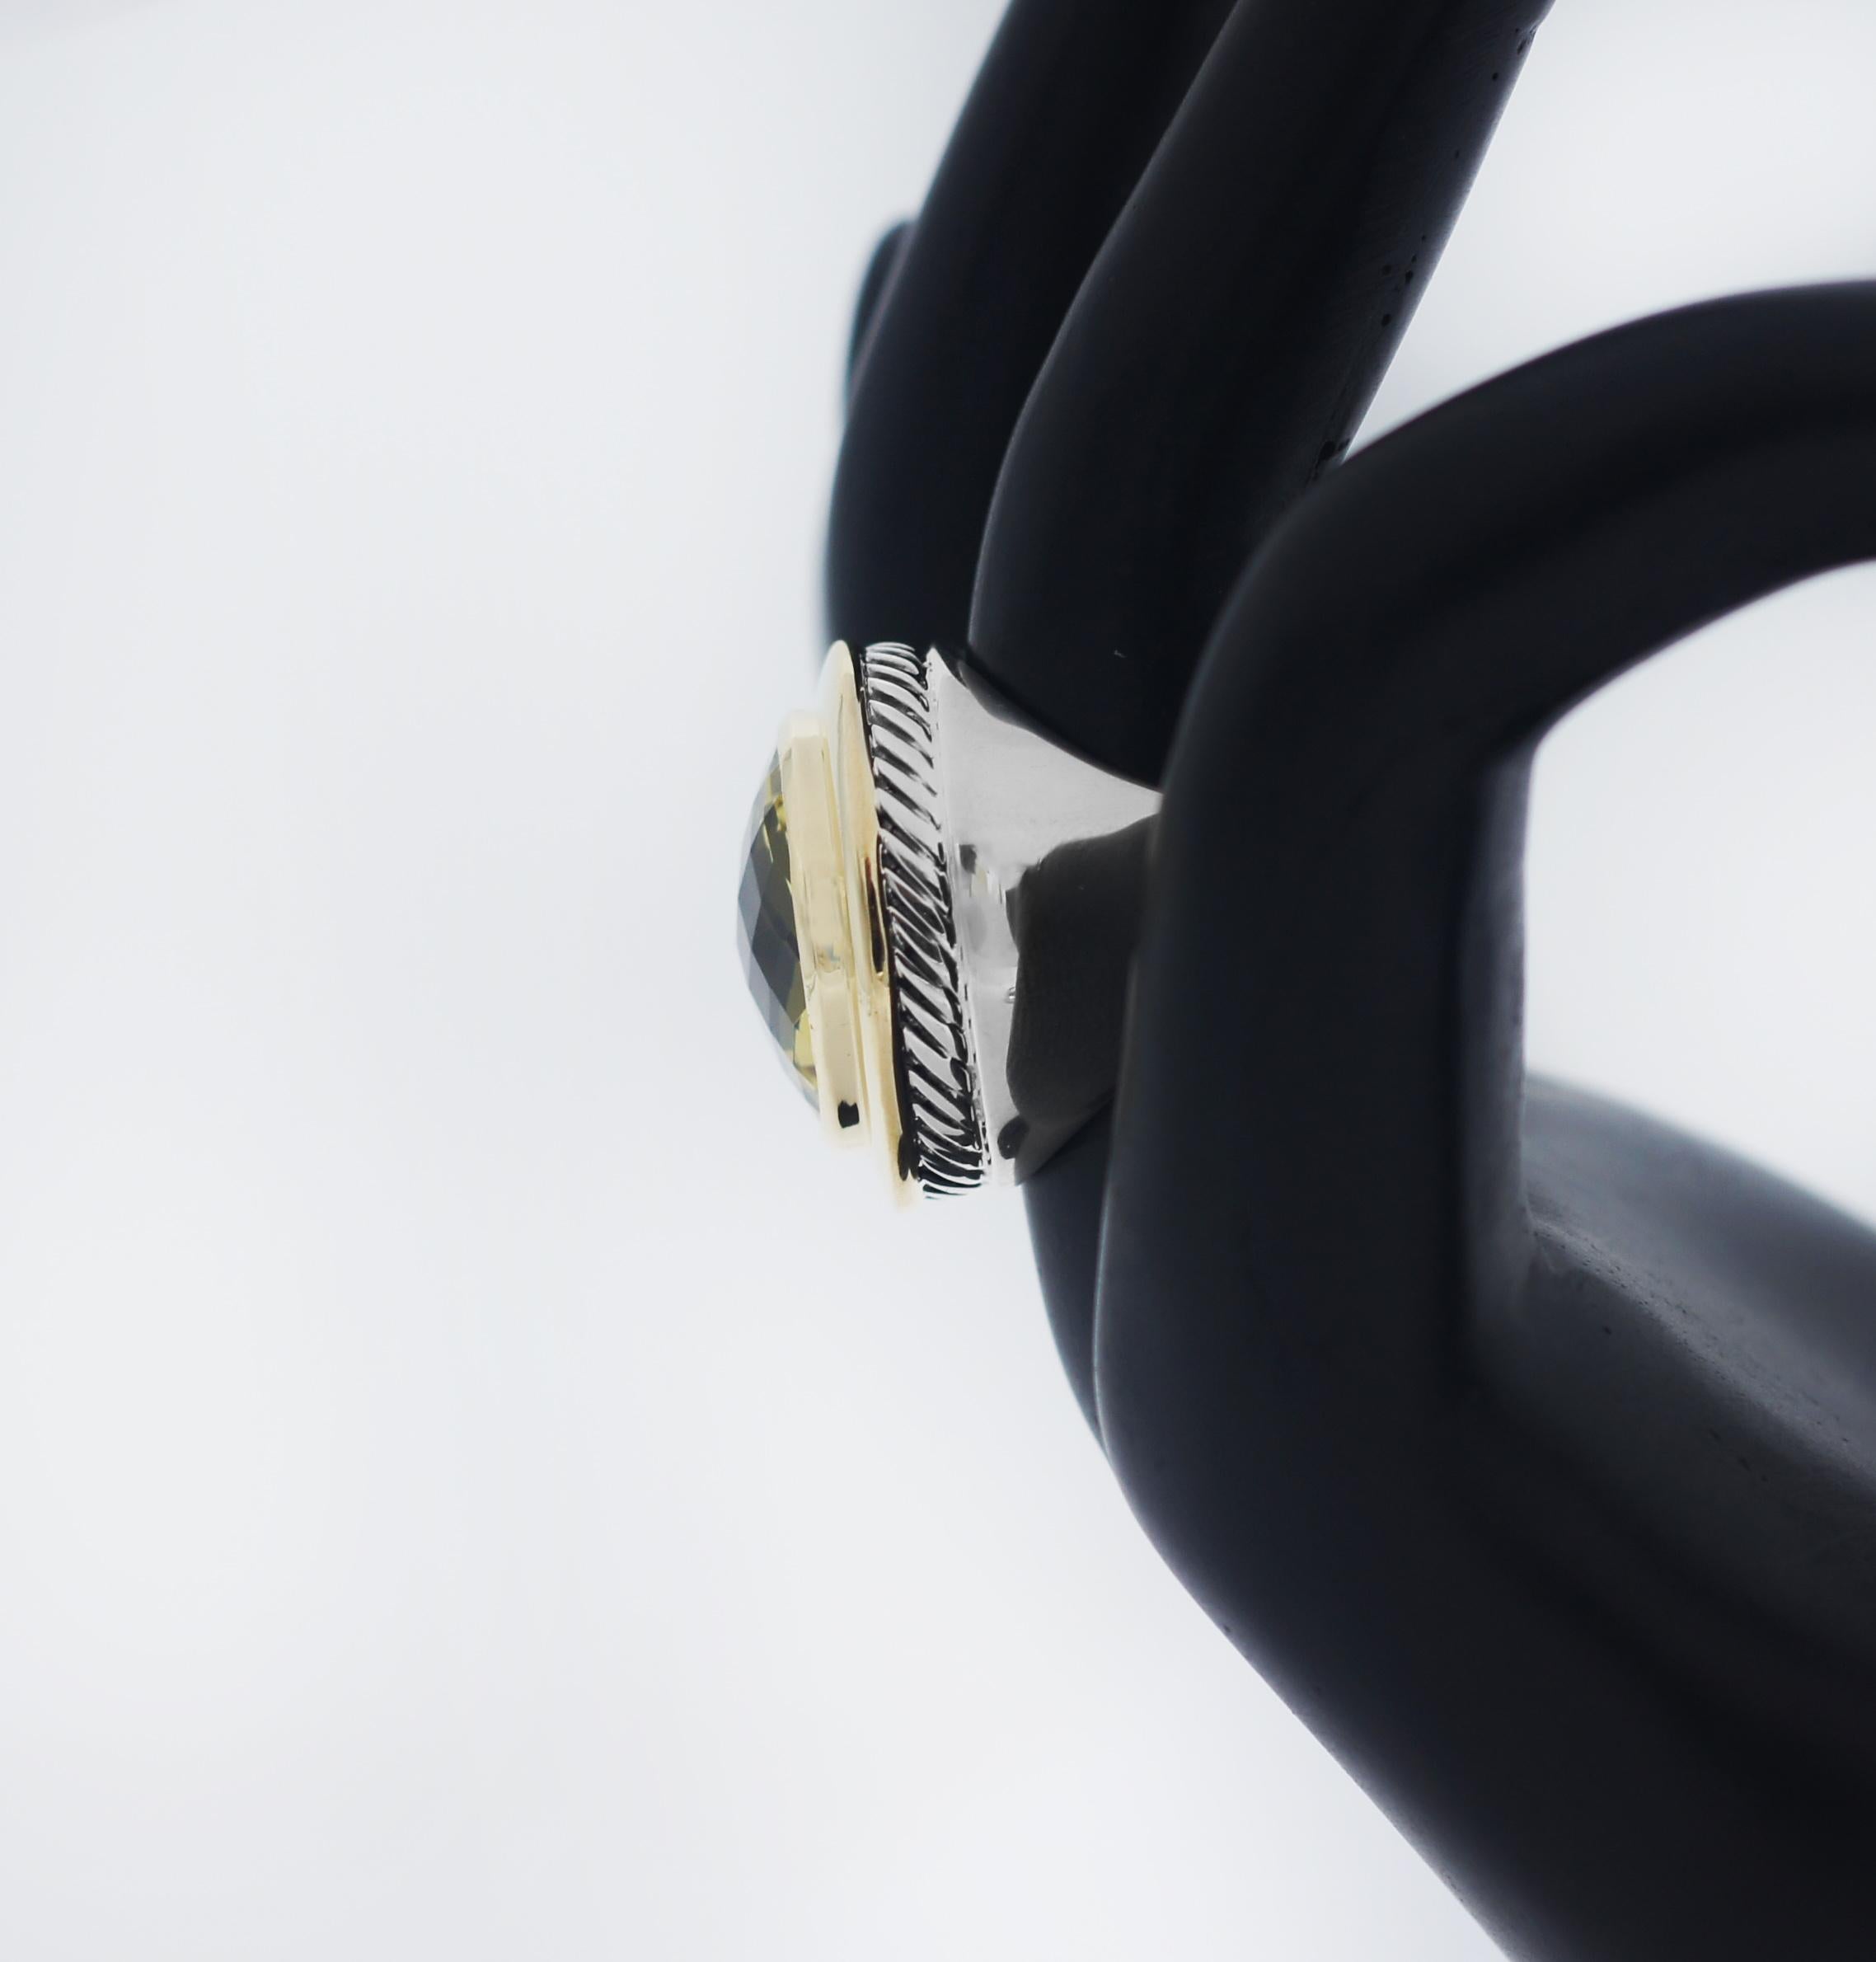 Der einzigartige Mittelstein der Albion® Collection'S war David Yurmans innovative Lösung, einen übergroßen Edelstein in einer raffinierten modernen Fassung mit klassischen Proportionen zu verwenden.
Dieser David Yurman Women's Albion Ring ist ein